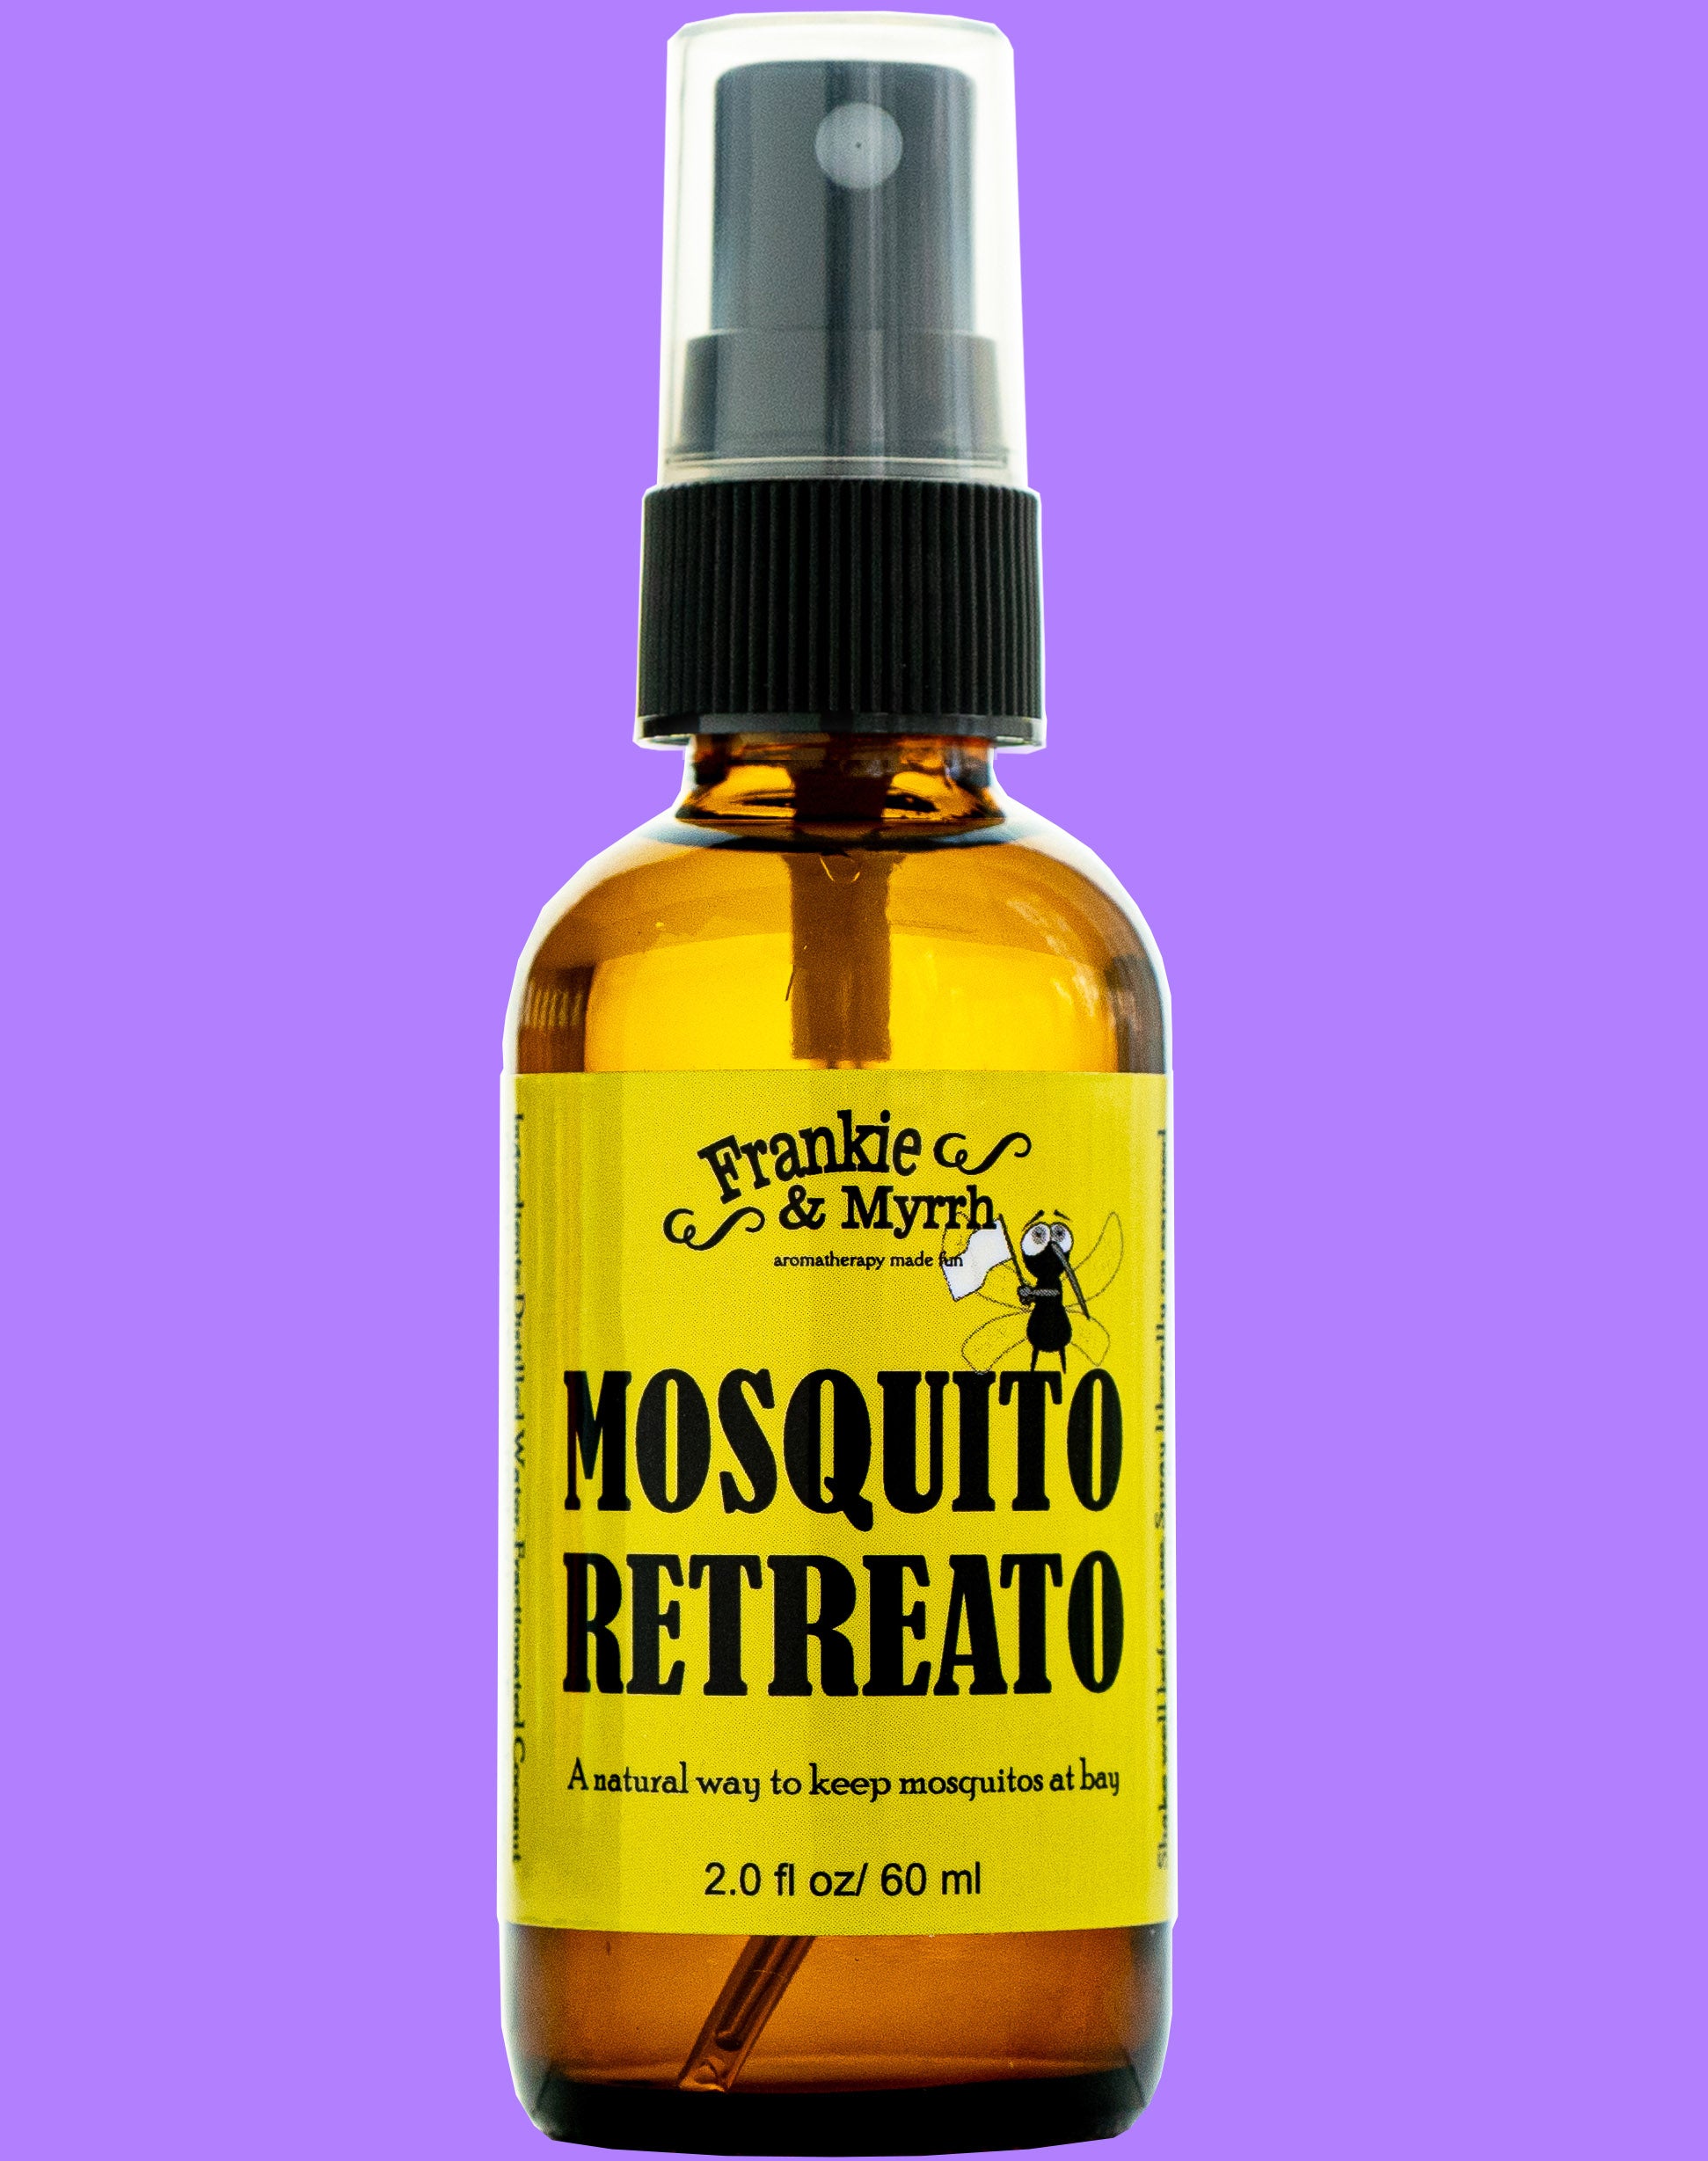 Mosquito Retreato | Mosquito Repellent Spray